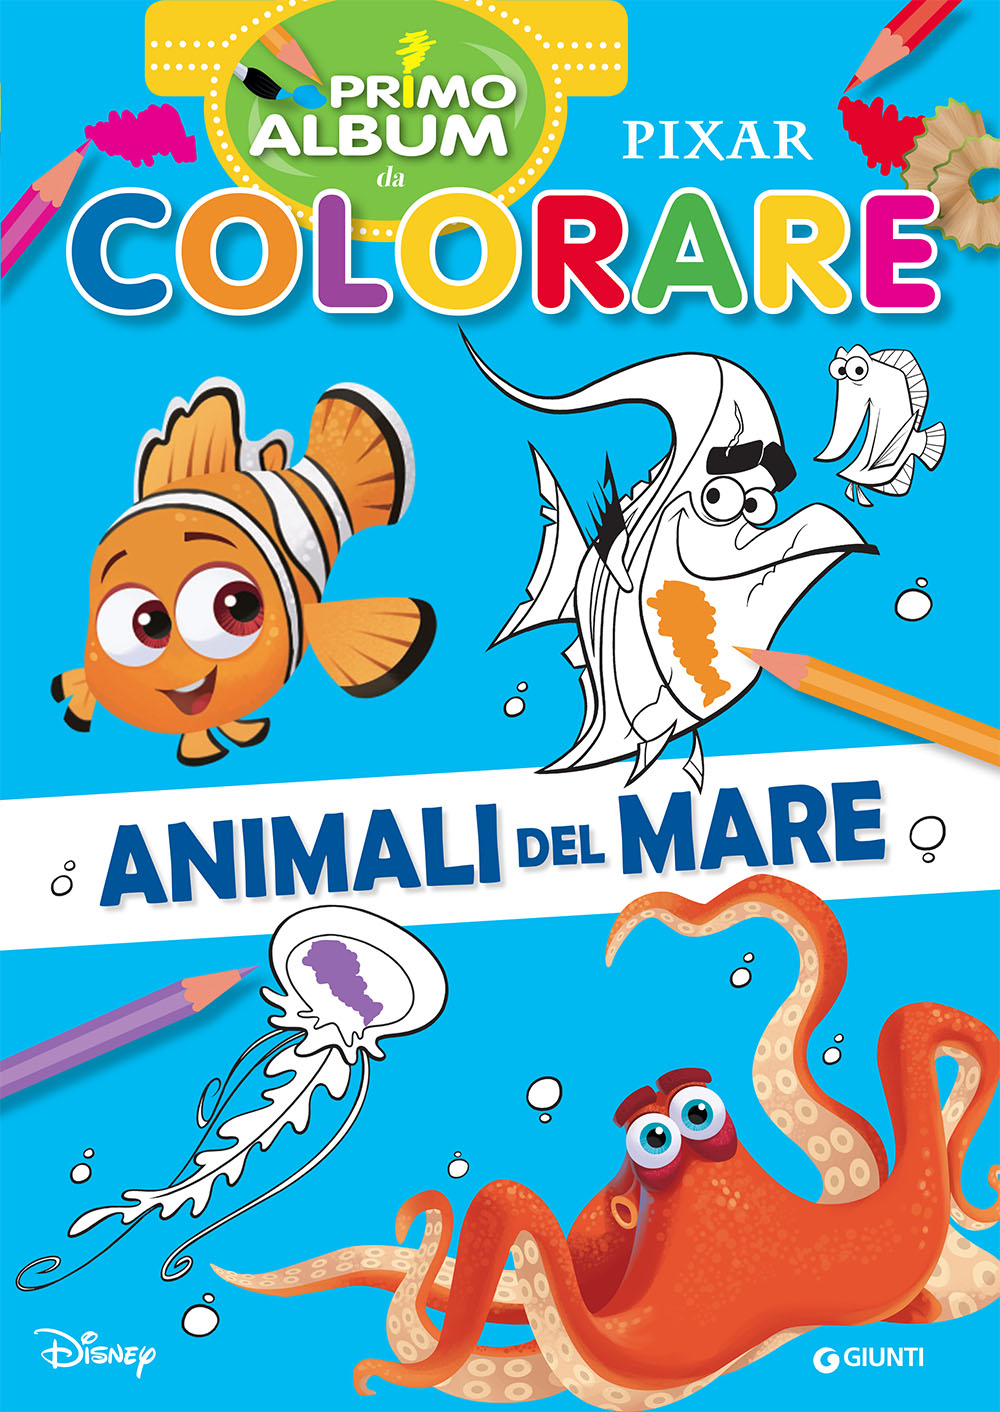 Primo album da colorare Pixar::Animali del mare